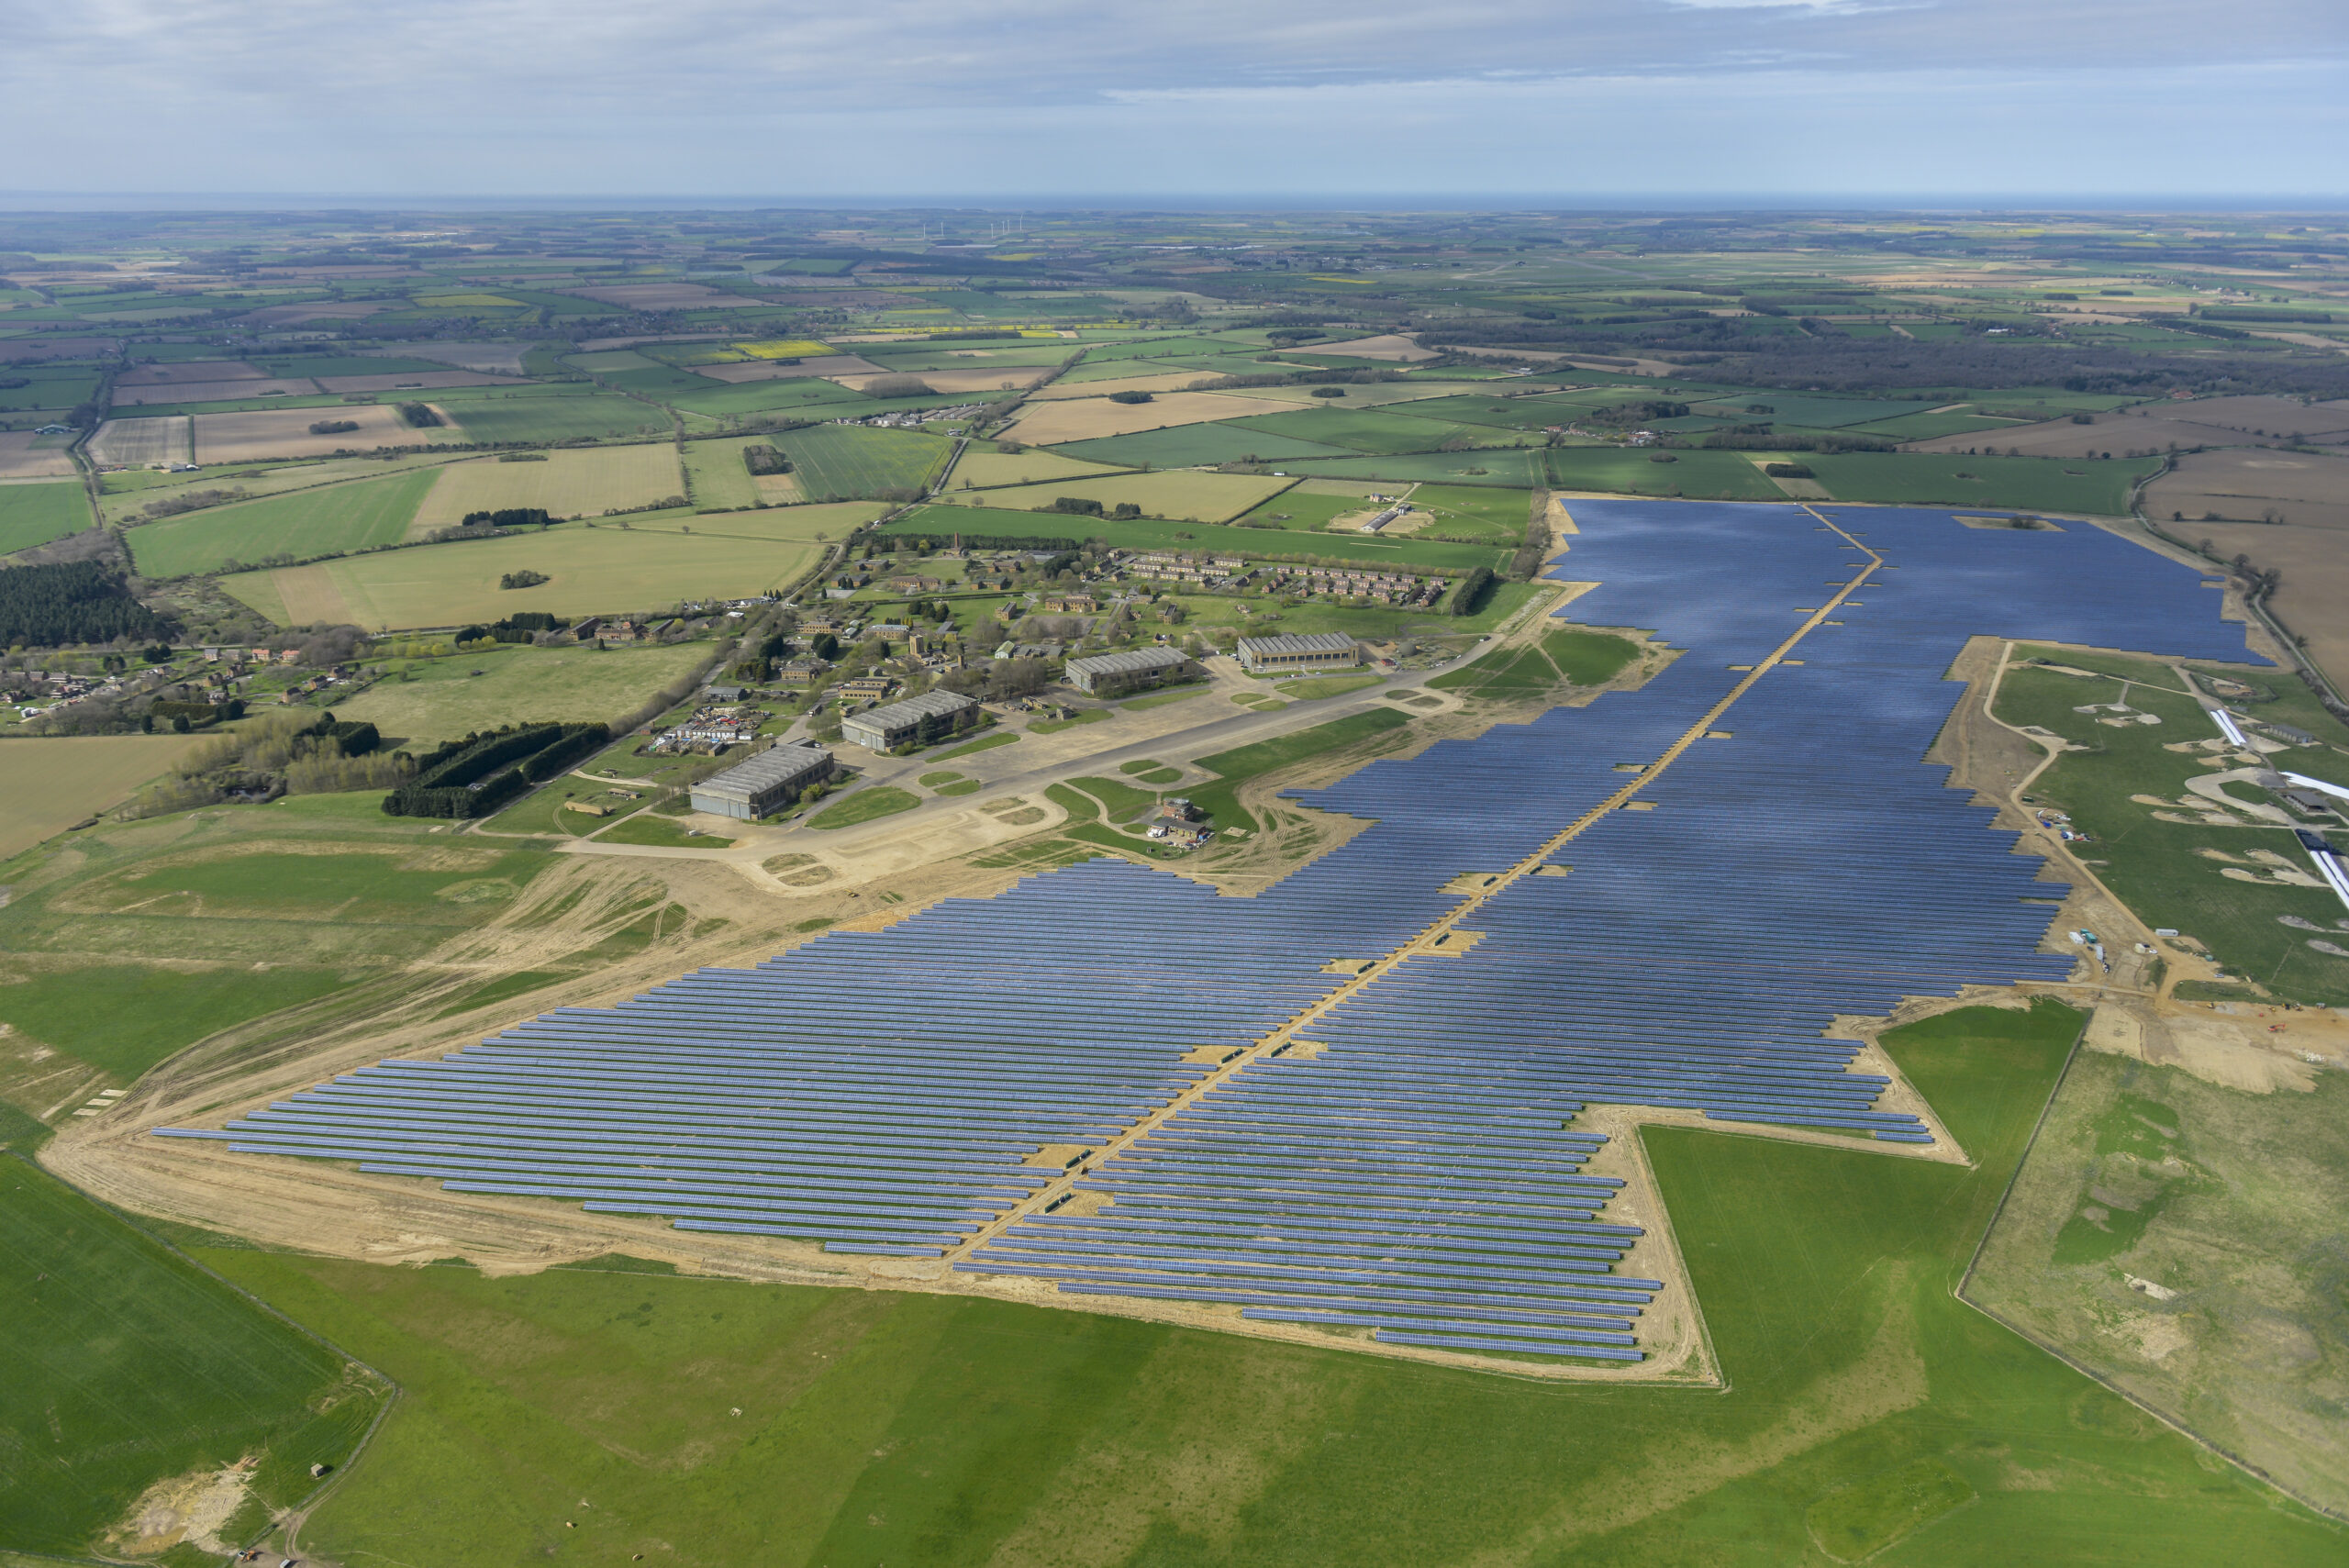 West Raynham solar farm site